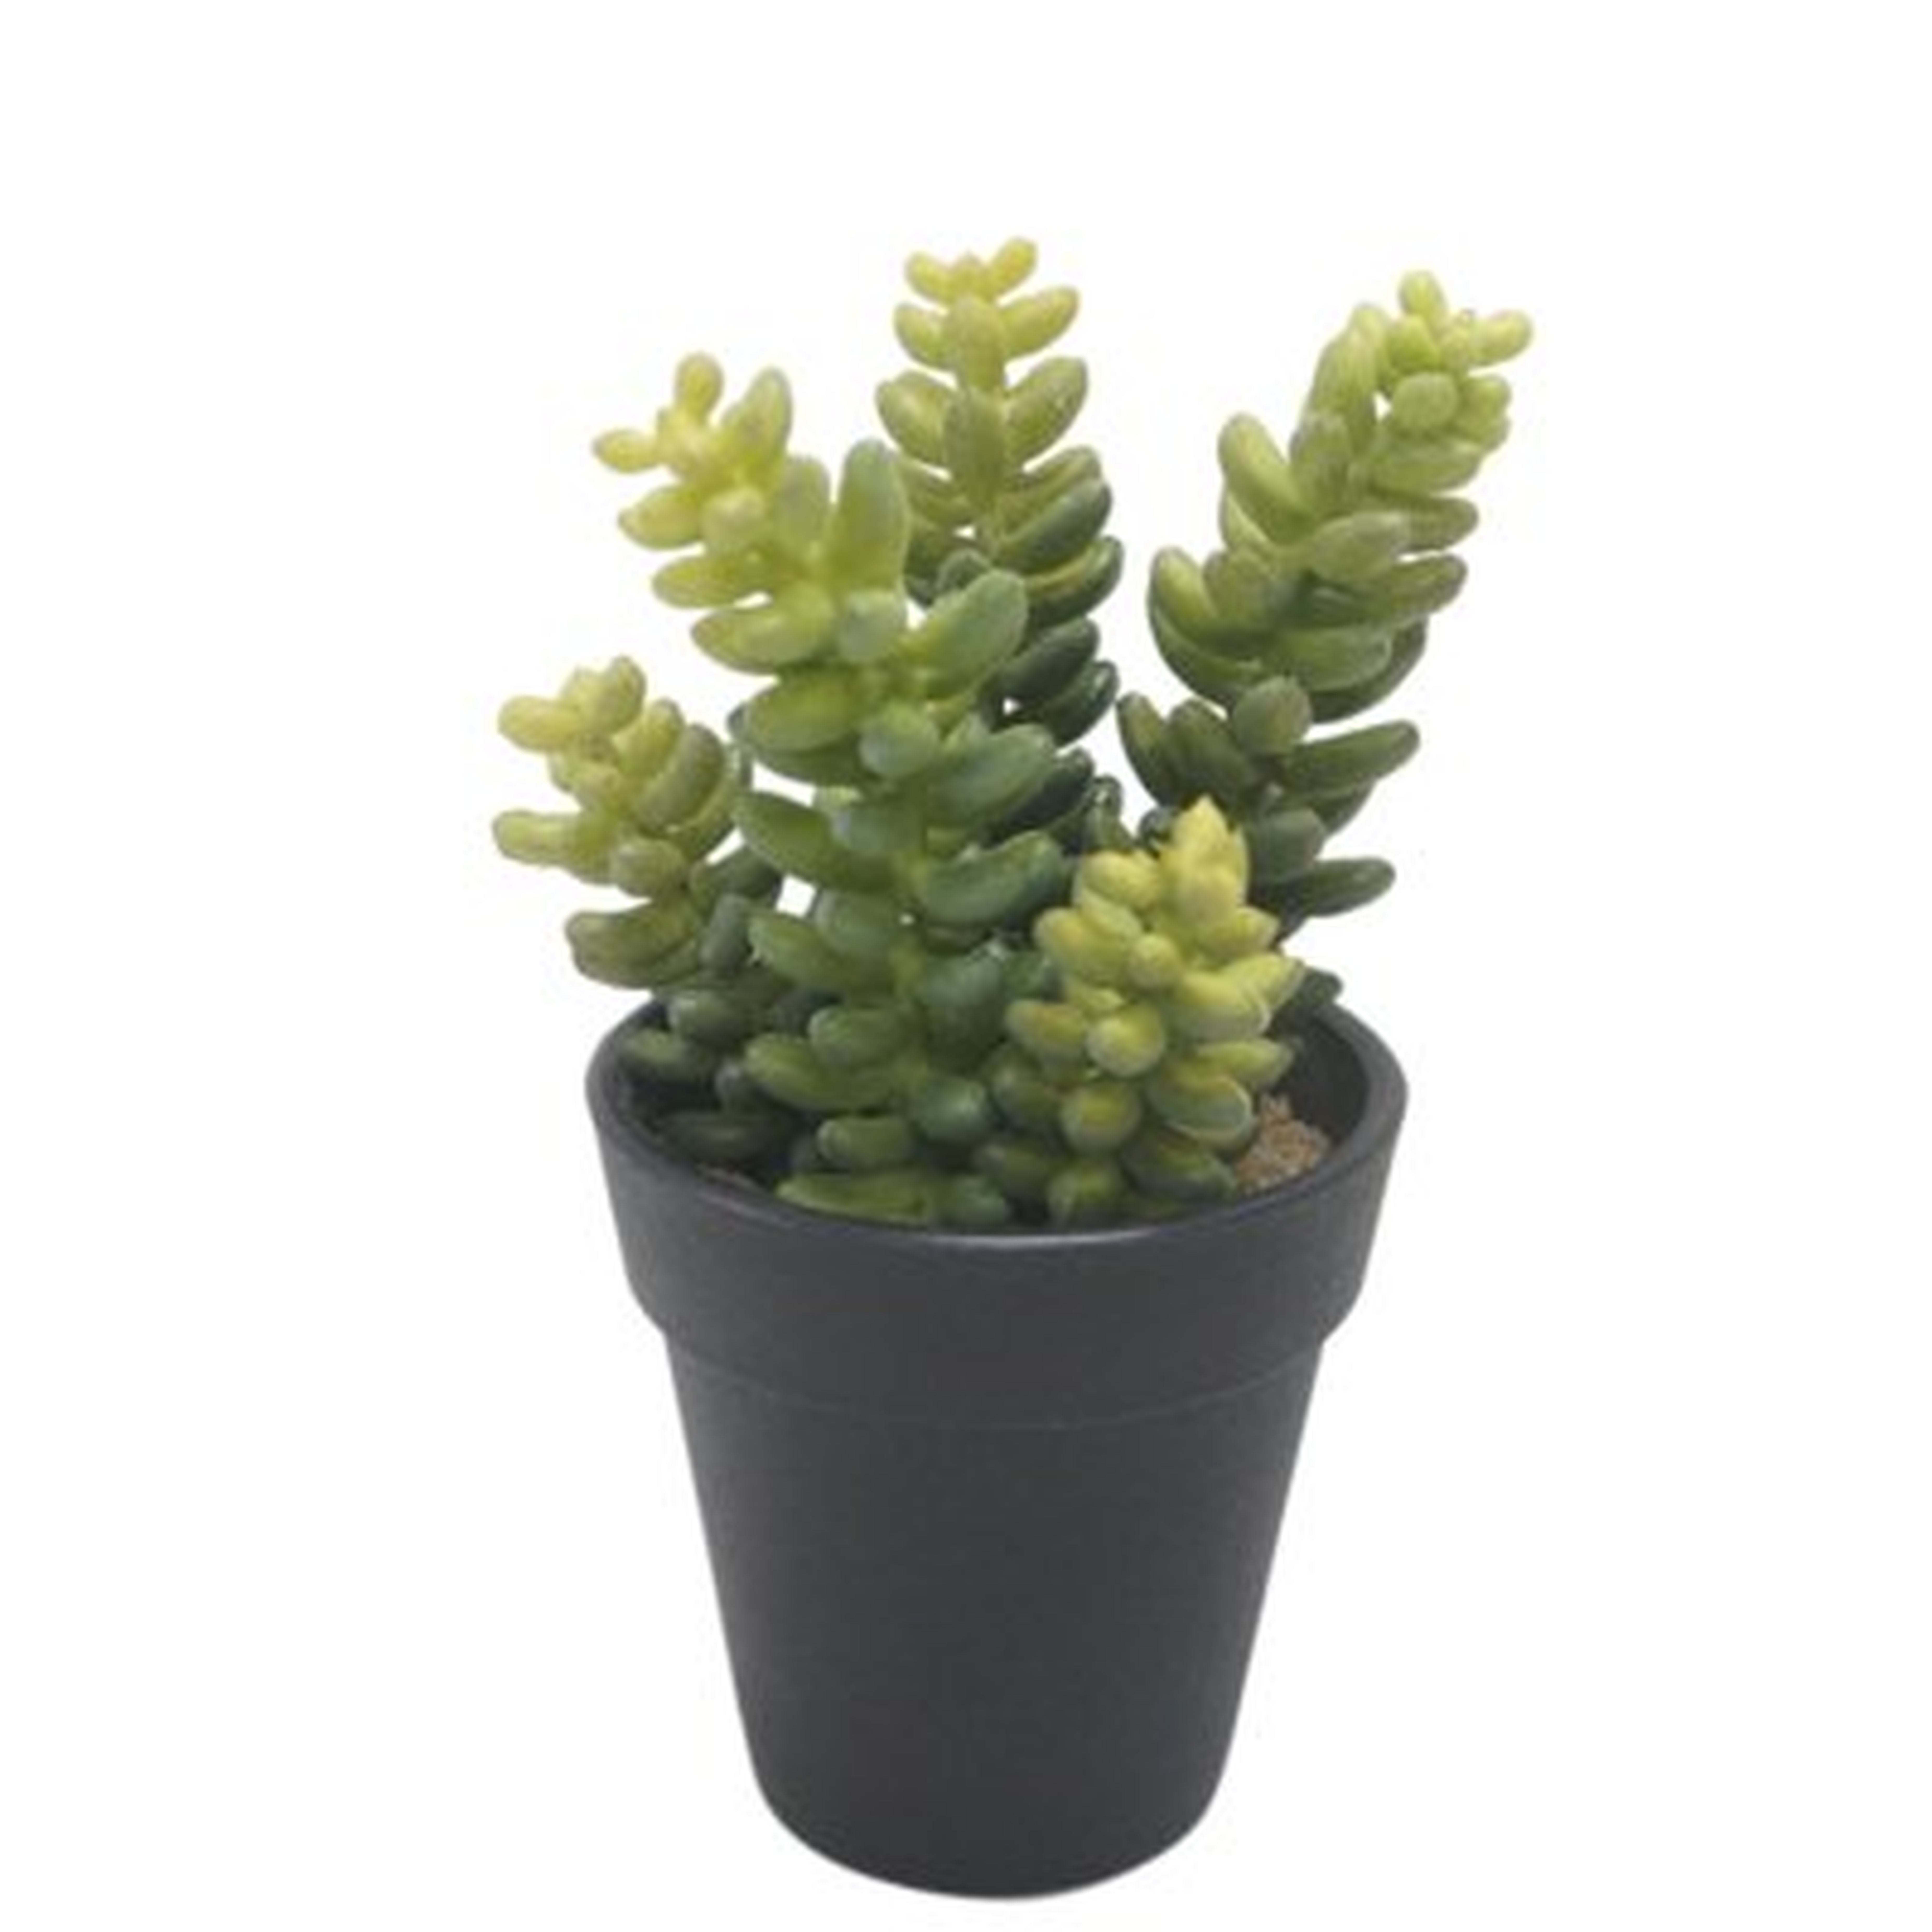 Faux Desktop Succulent Plant in Pot - Wayfair